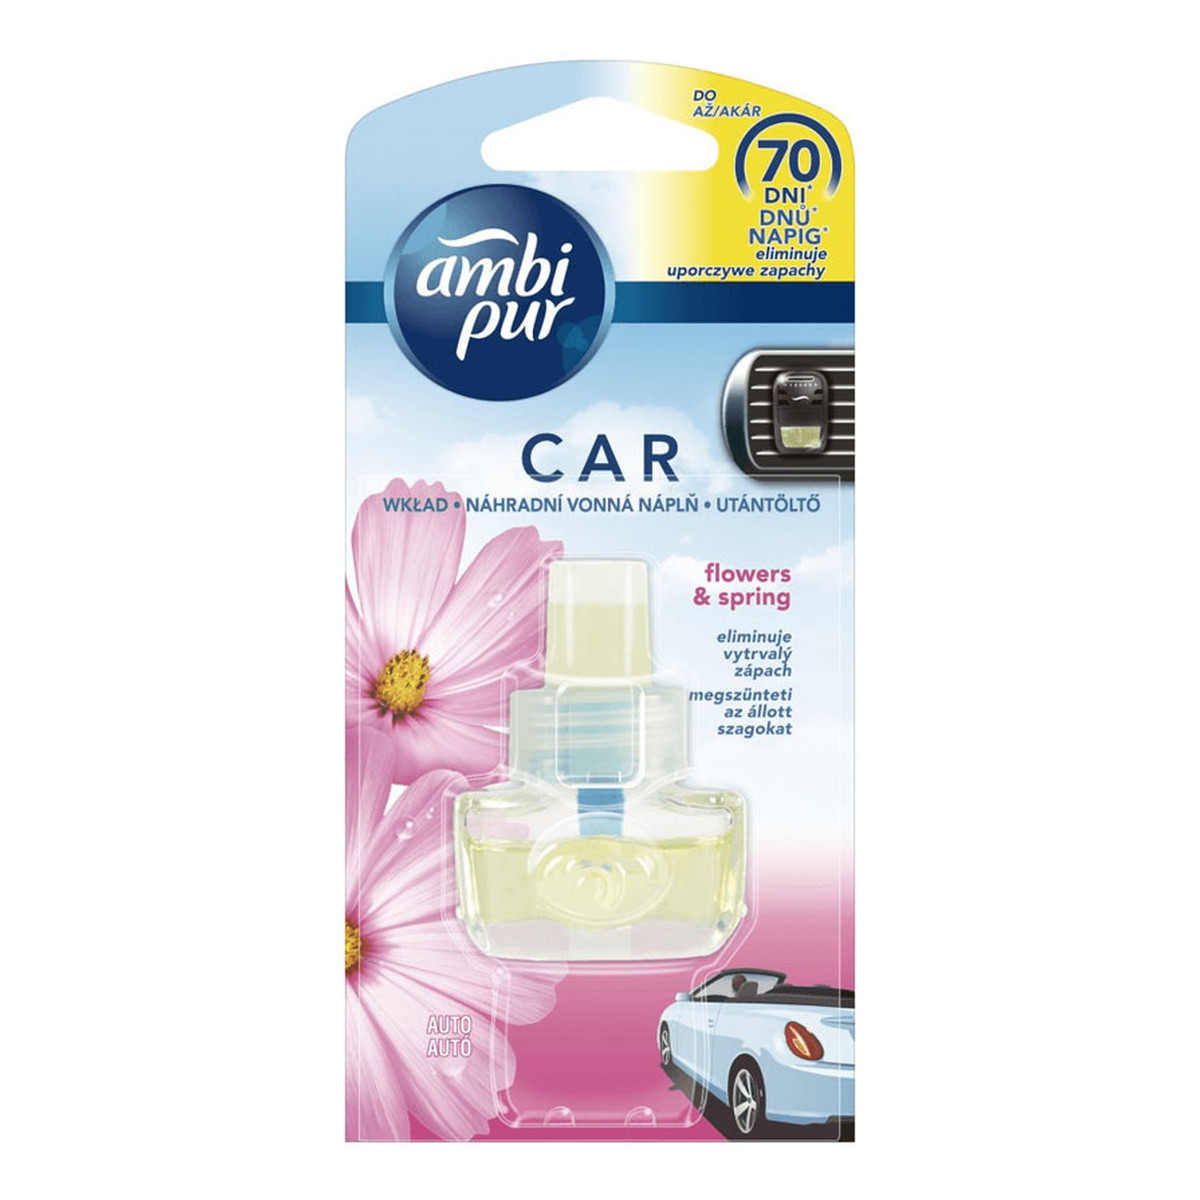 Ambi Pur Car Flowers&Spring odświeżacz powietrza do samochodu + zapach 7ml